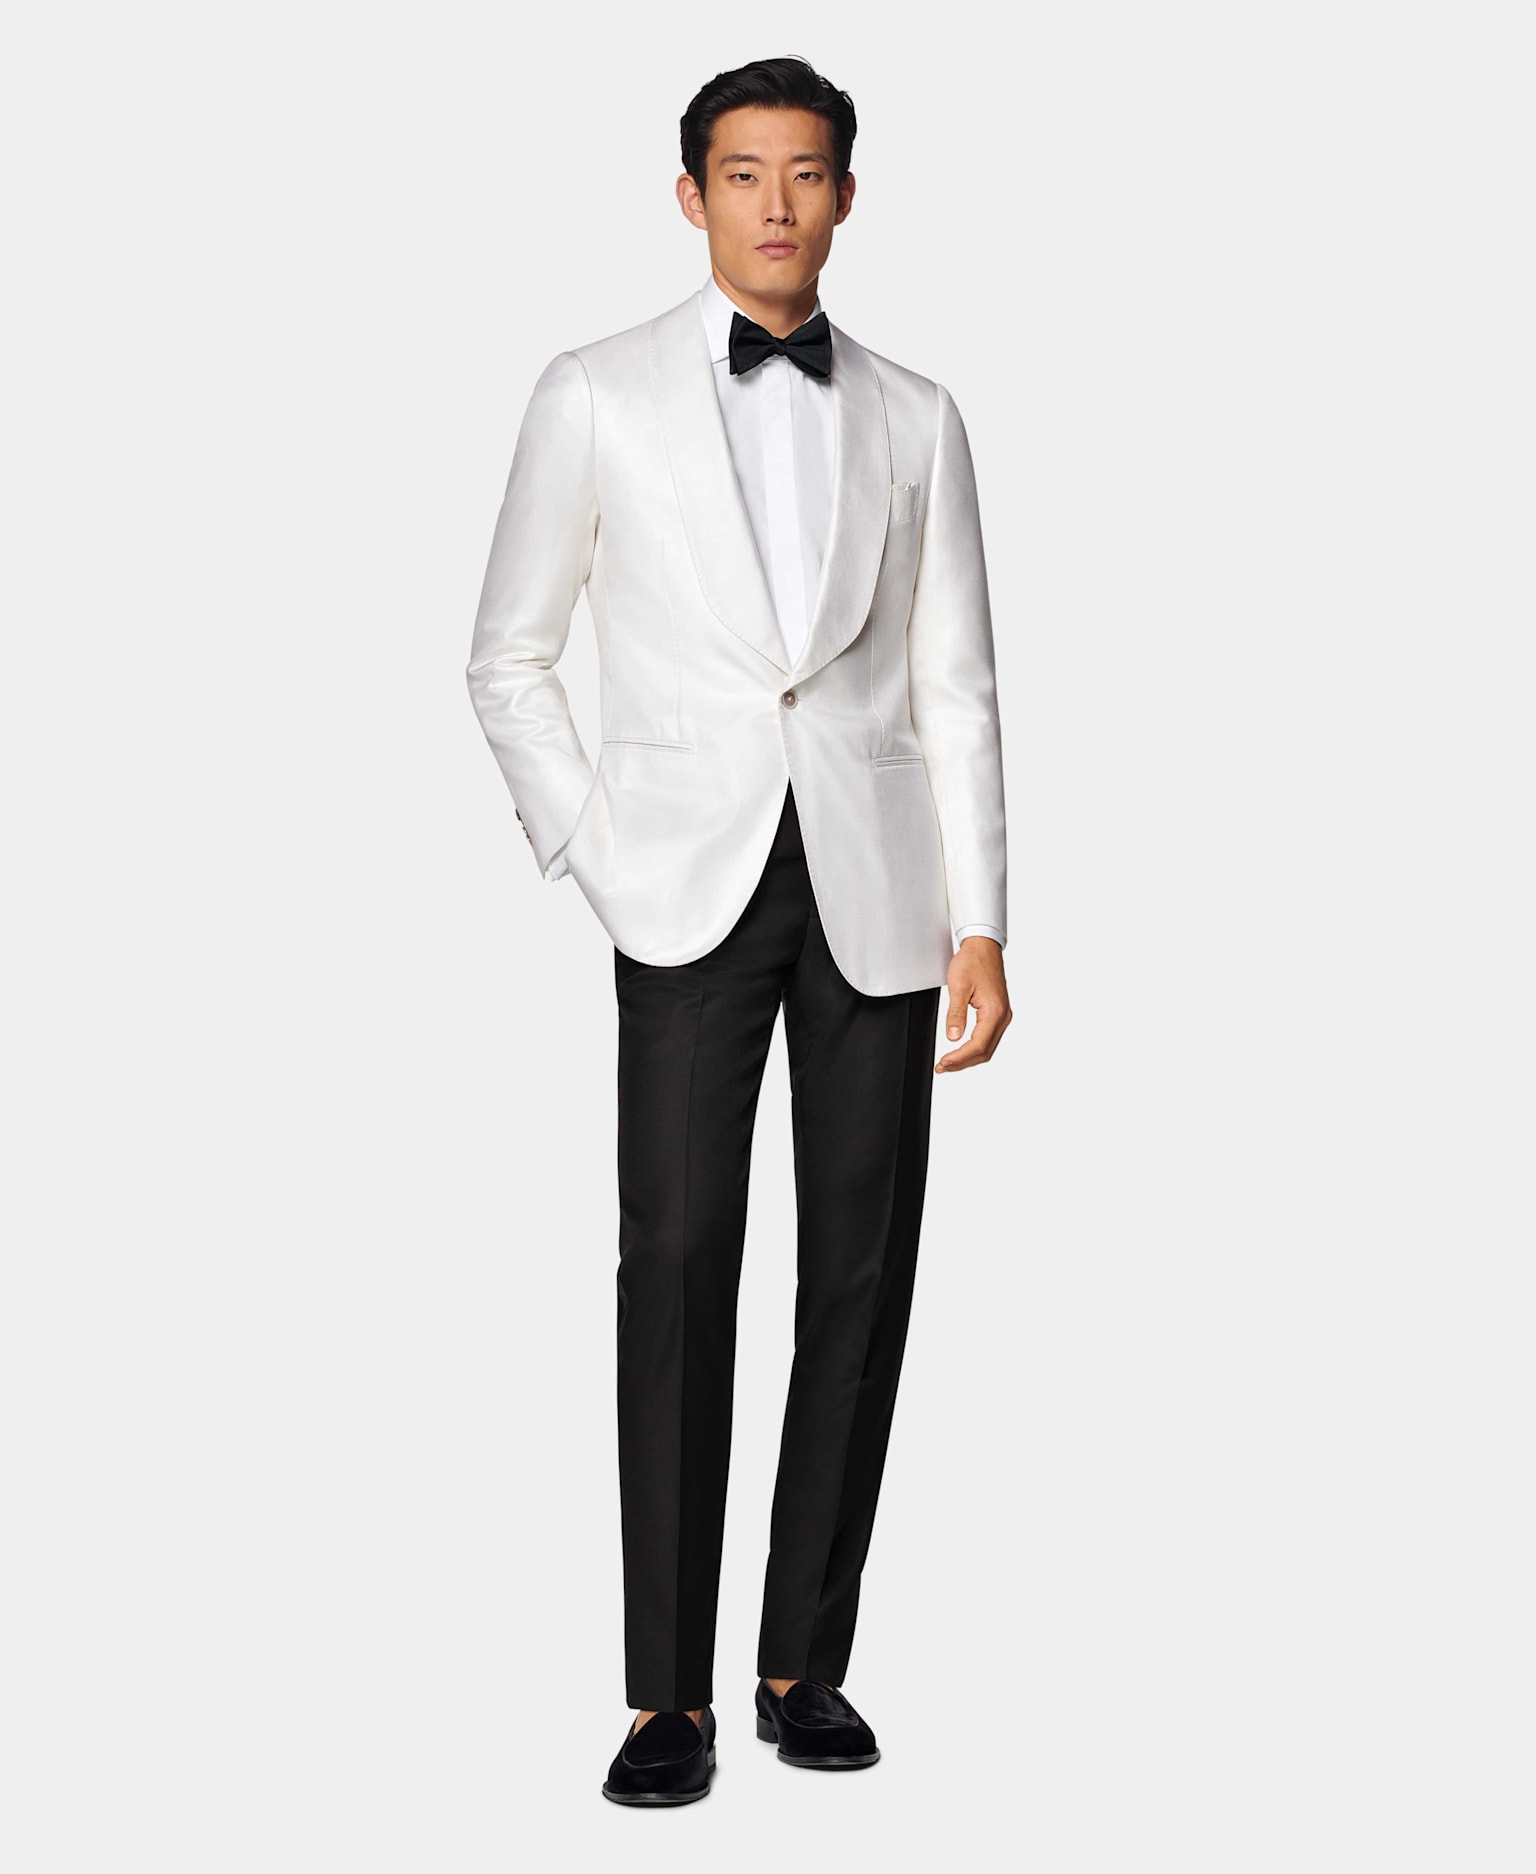 Weißes Dinner Jacket mit Schalkragen & schwarzer Hose, kombiniert mit weißem Hemd mit verdeckter Knopfleiste und schwarzer Seidenfliege.